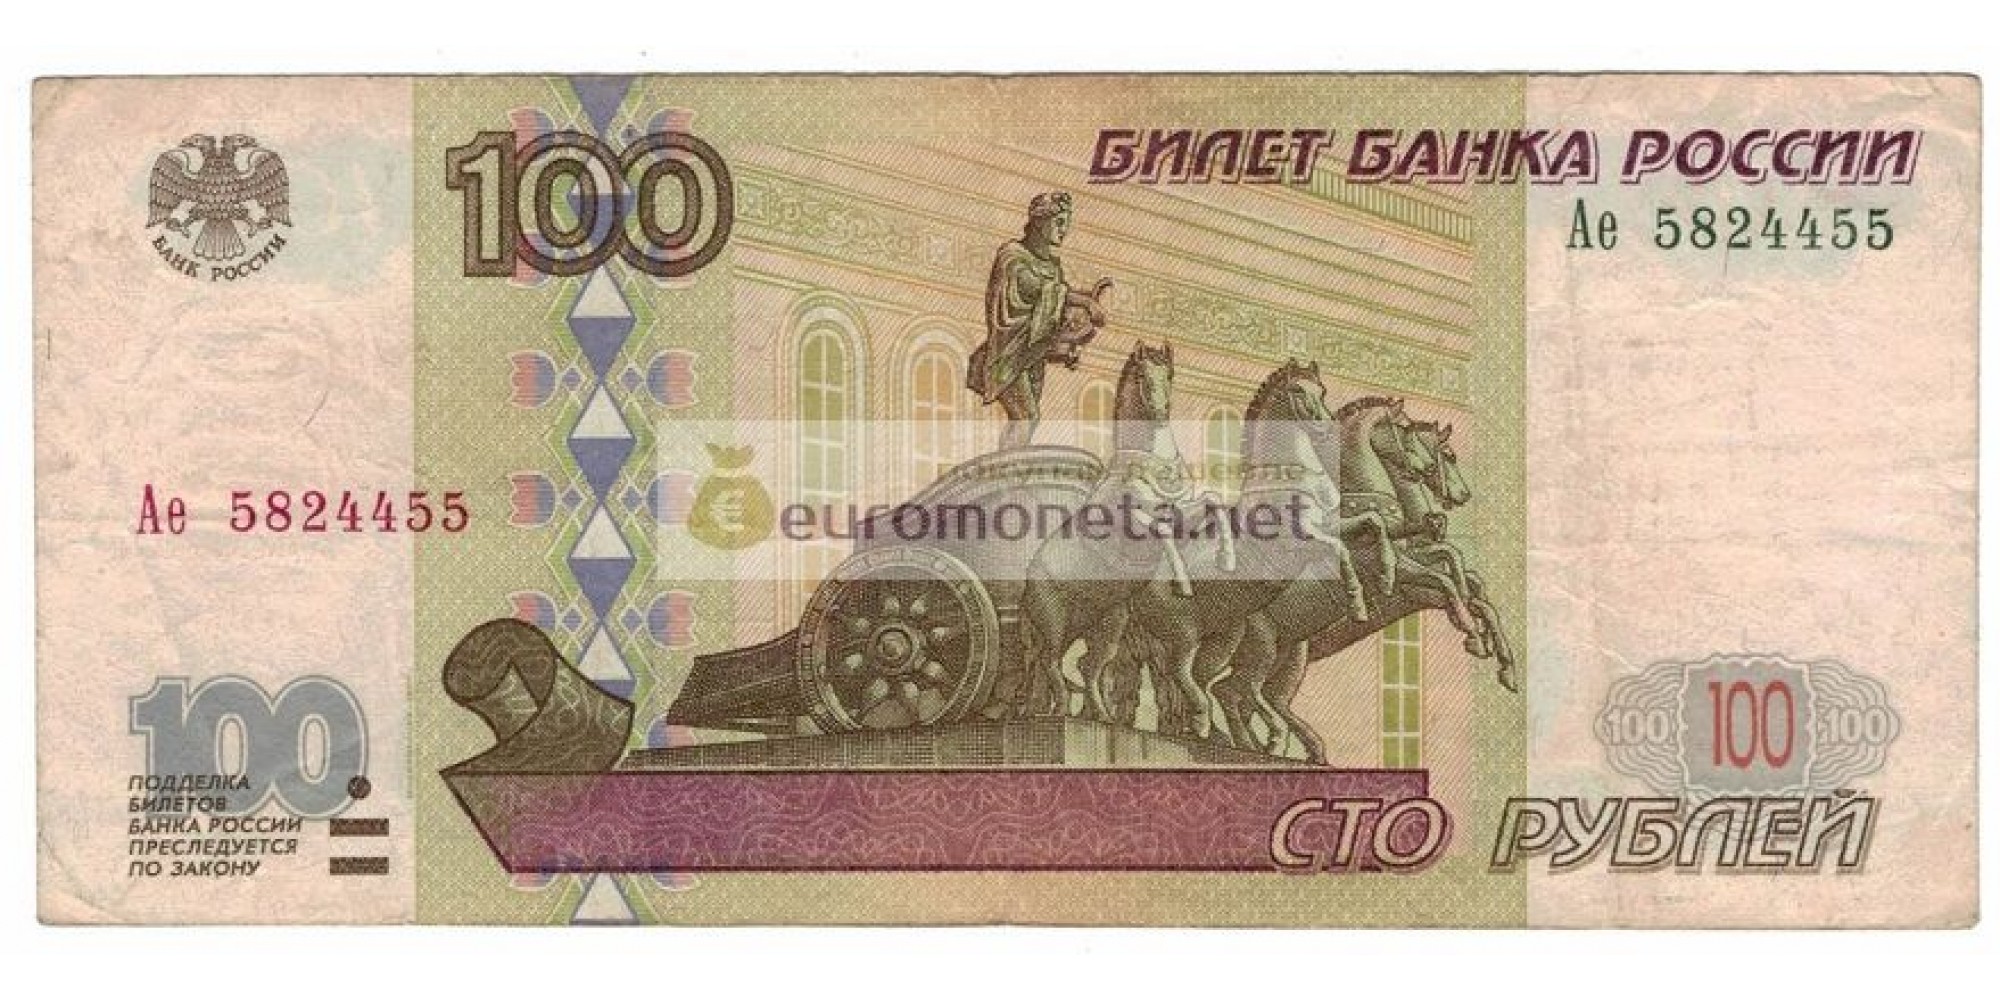 Россия 100 рублей 1997 год модификация 2001 год серия Ае 5824455